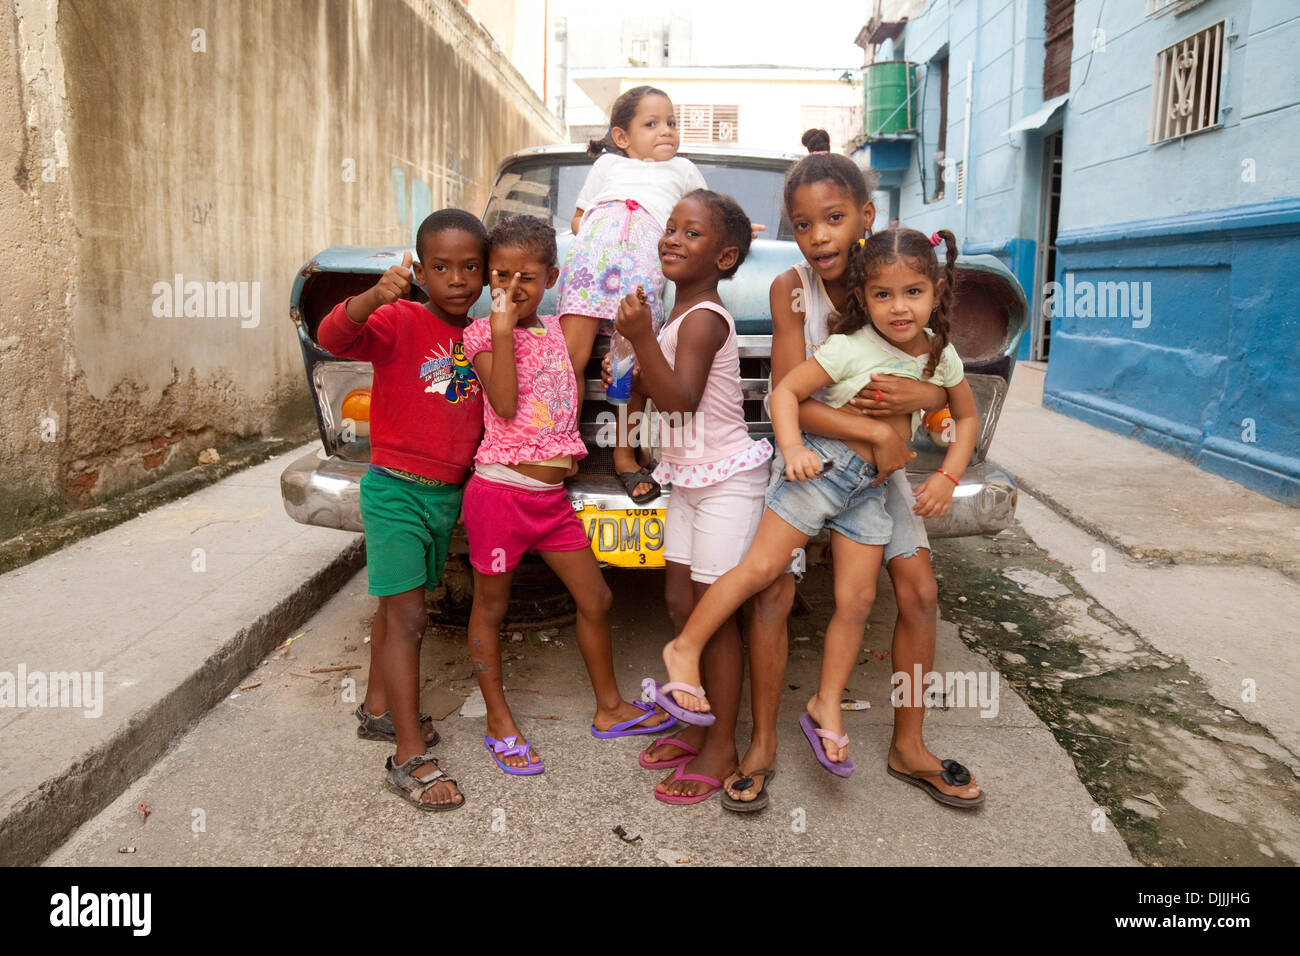 Les enfants cubains jouant dans un groupe dans la rue dans un quartier pauvre de La Havane, Cuba Caraïbes Banque D'Images